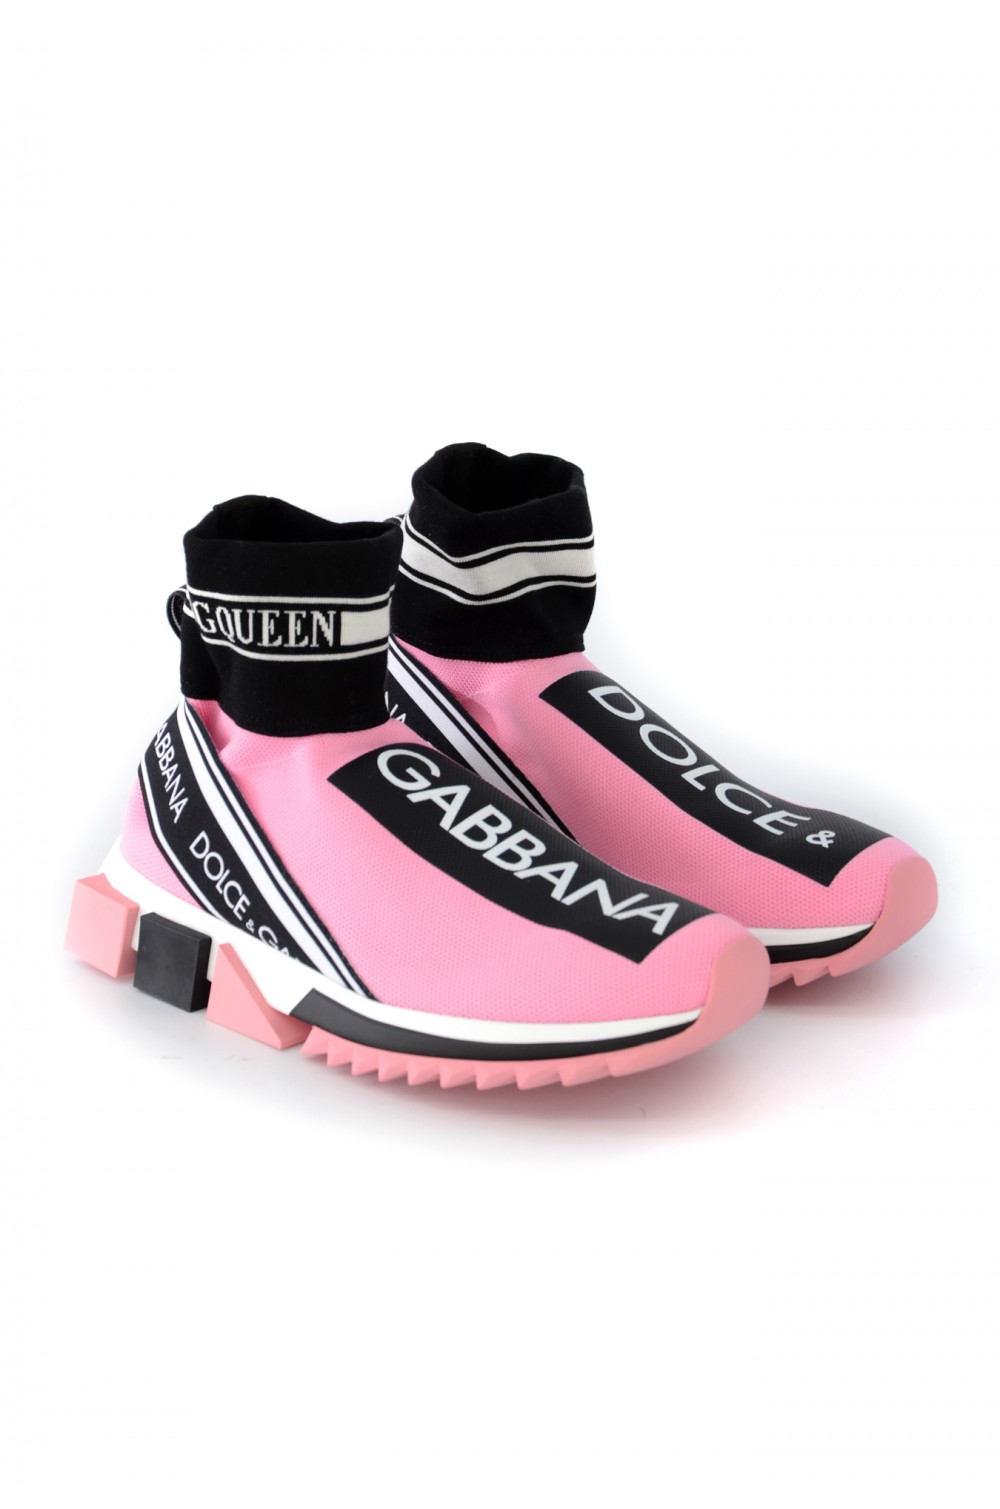 Dolce & Gabbana Women Boot Sneakers - CK1645 AZ708